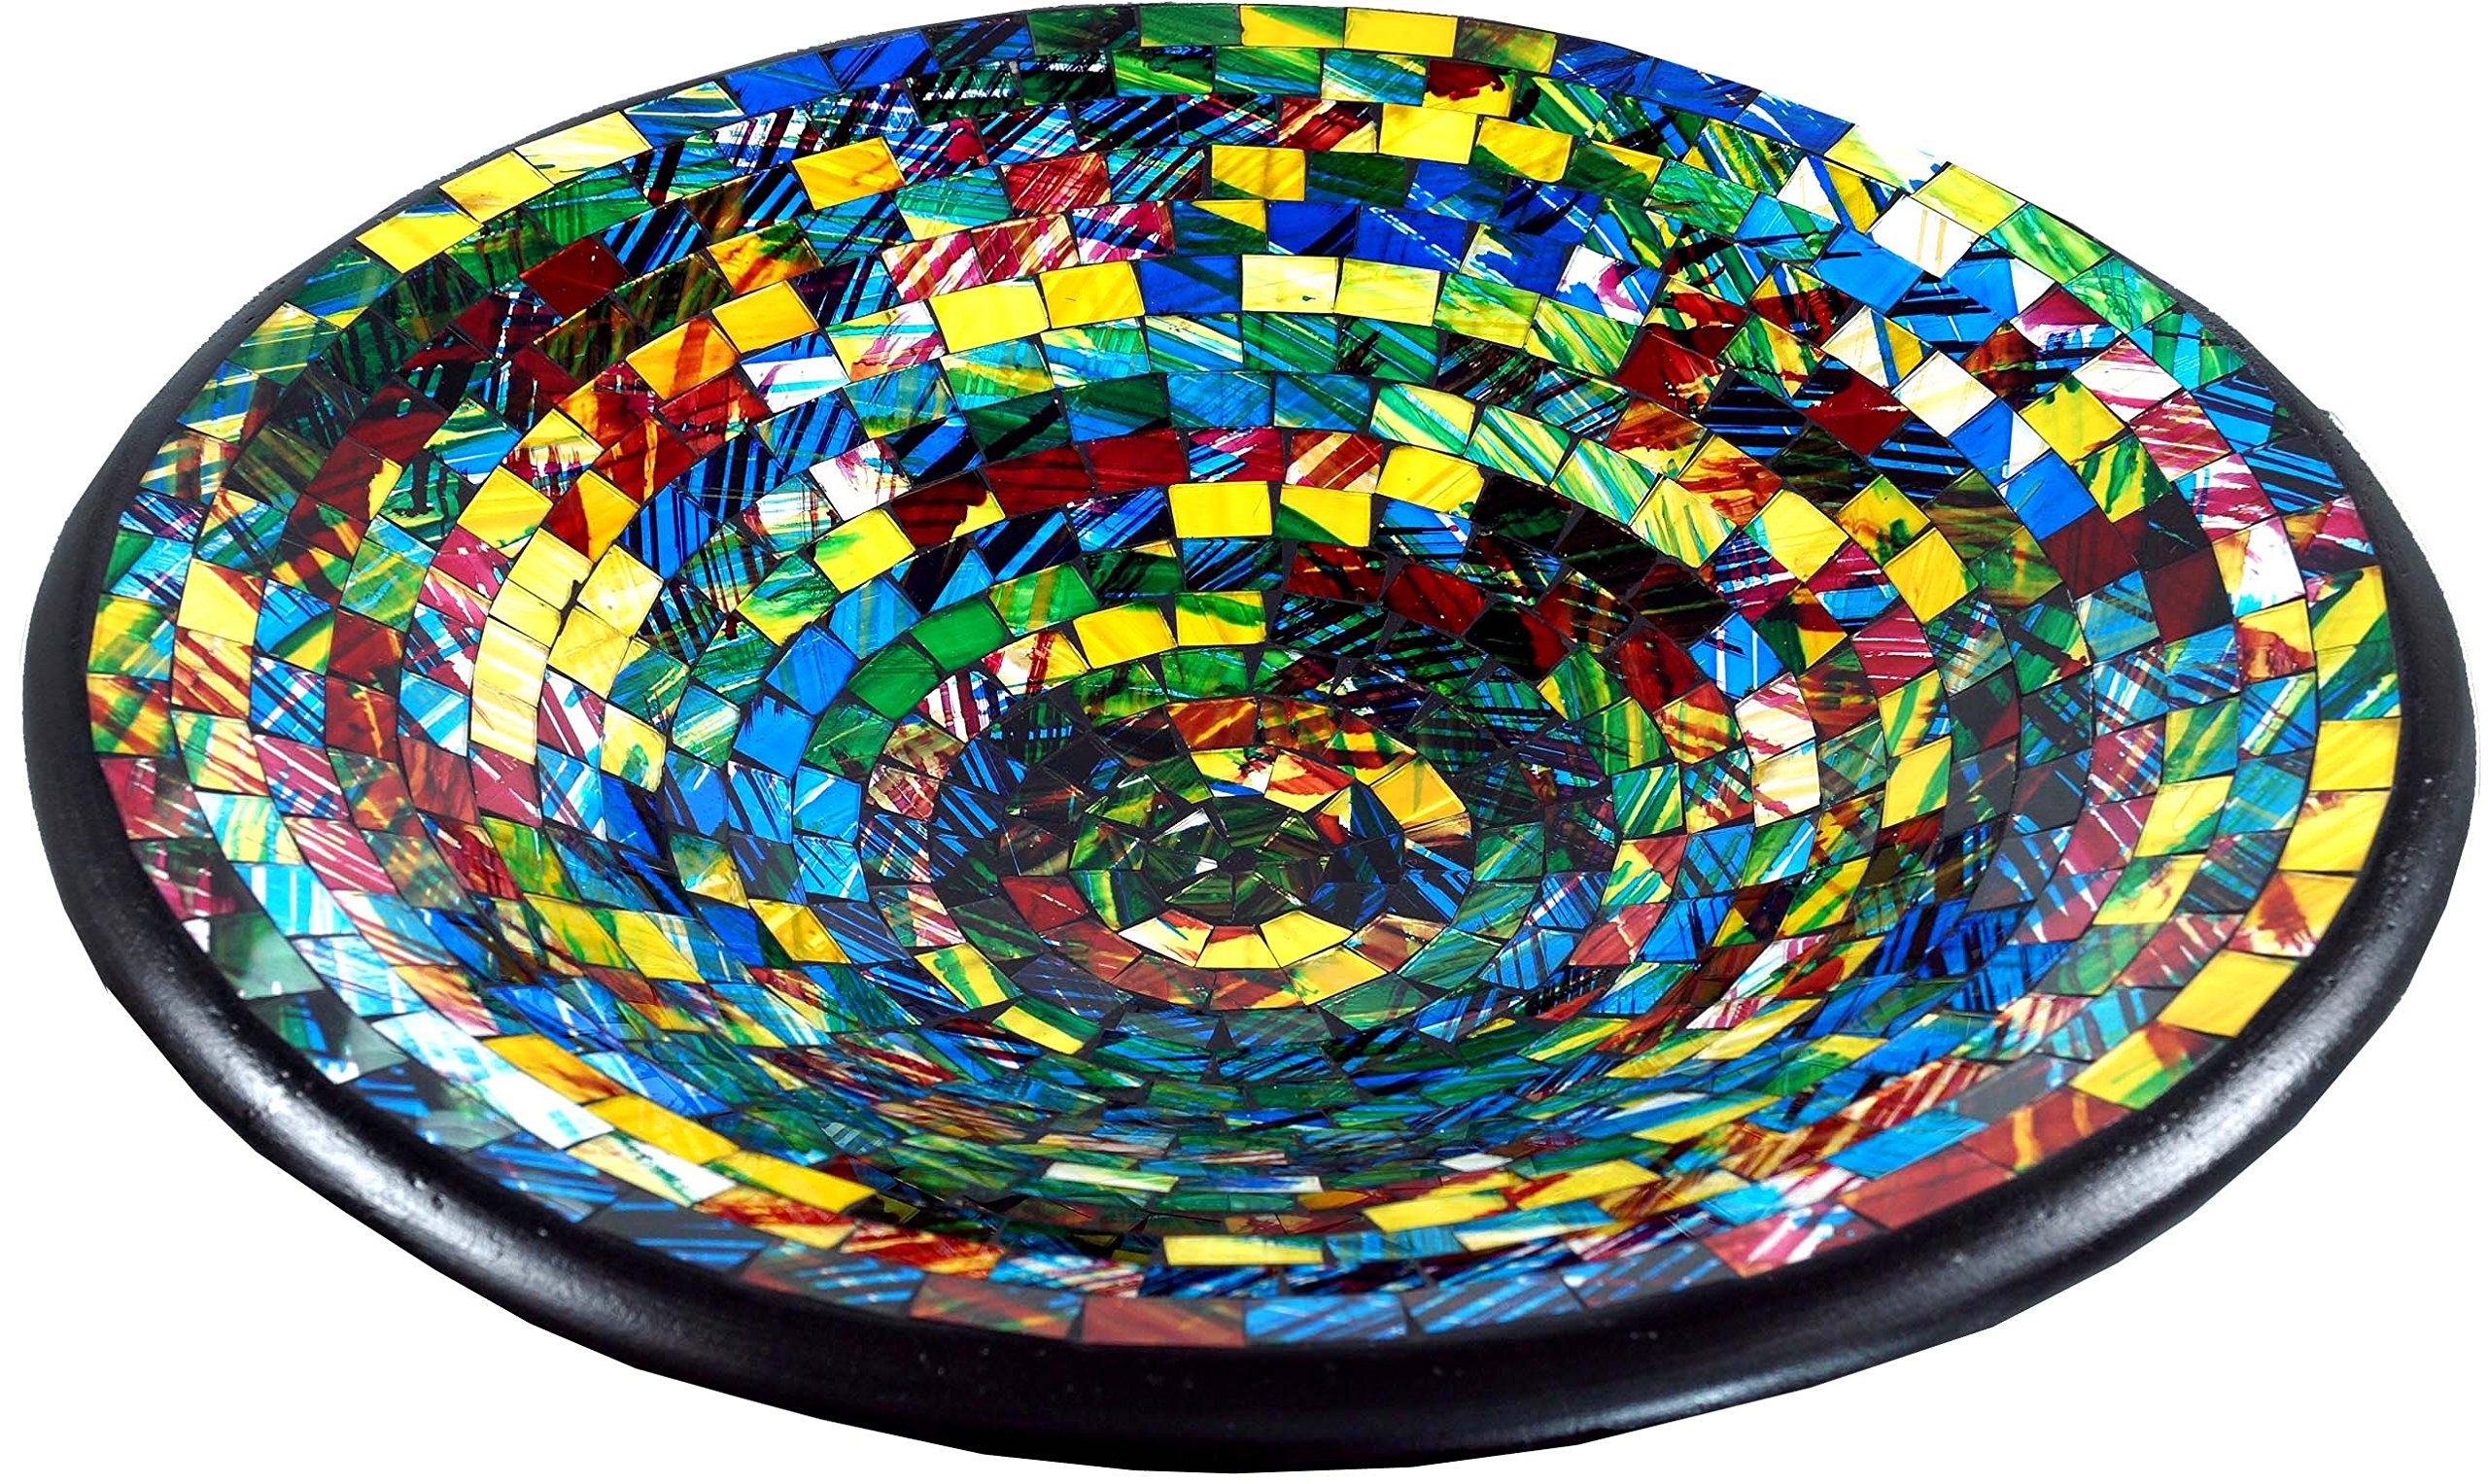 GURU SHOP Runde Mosaikschale, Untersetzer, Dekoschale, Handgearbeitete Keramik & Glas Obst Schale - Design 22, Mehrfarbig, Größe: Mittel (Ø 28 Cm), Schalen